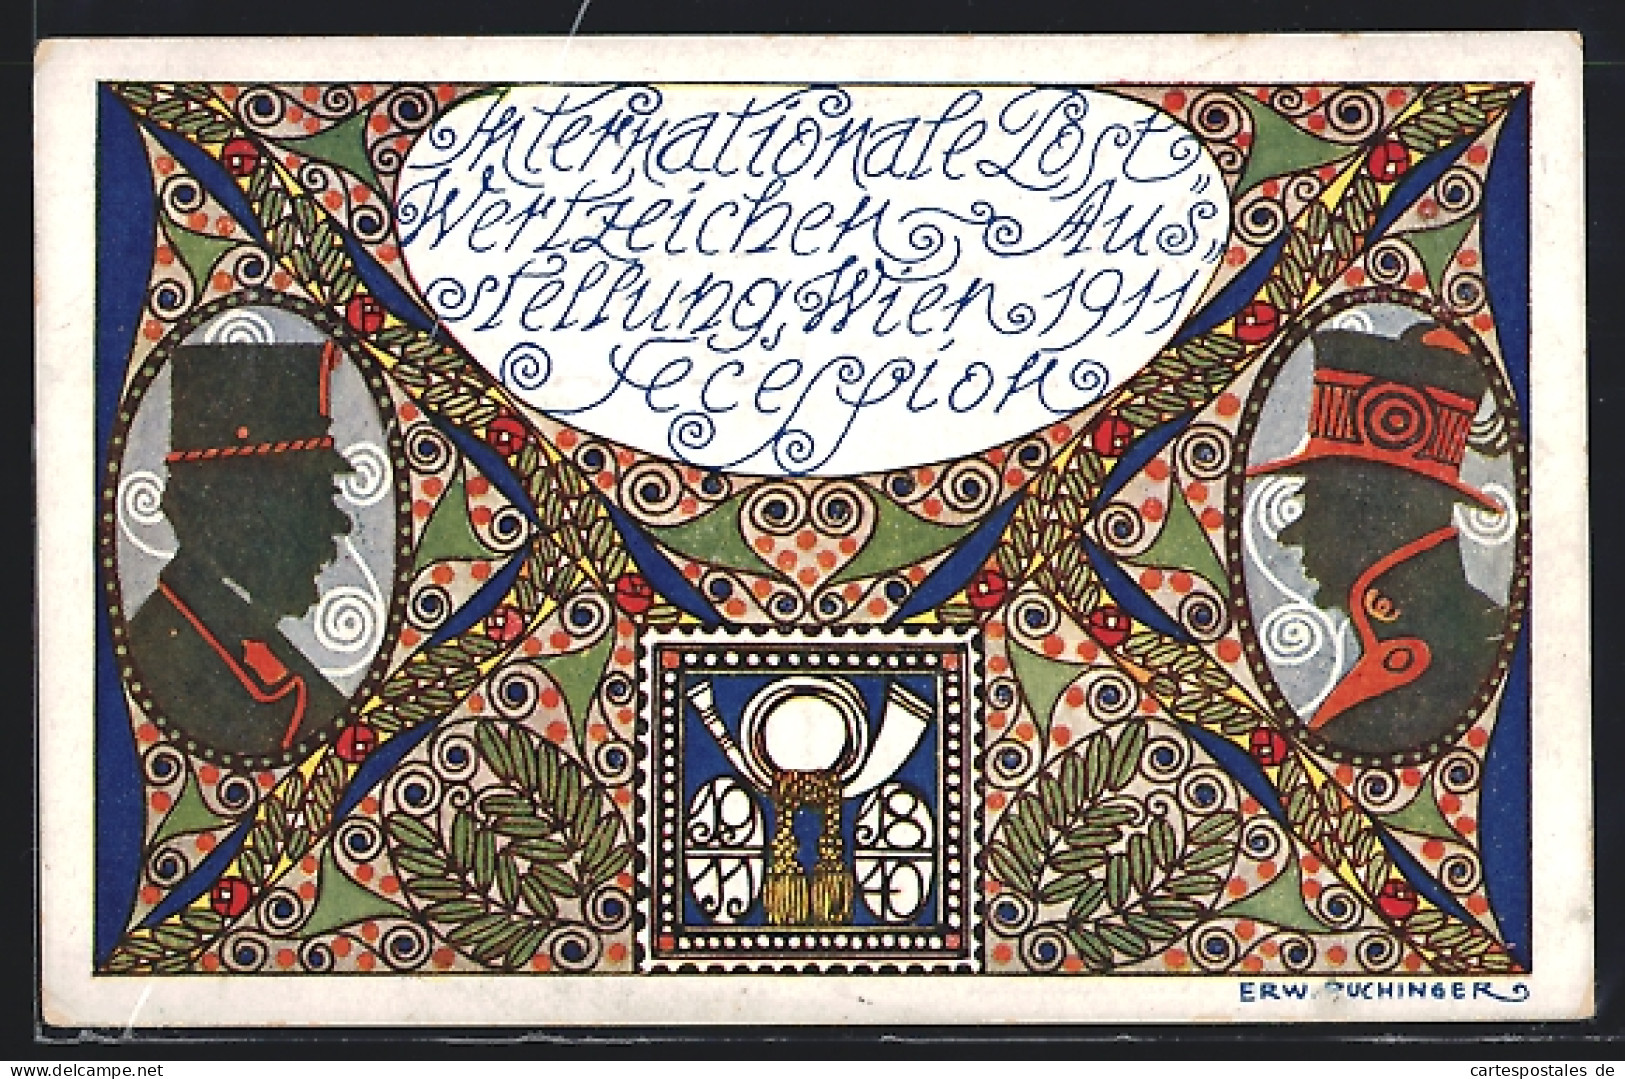 Künstler-AK Sign. Erw. Puchinger: Wien, Internationale Postwertzeichen-Ausstellung 1911, Secession, Ganzsache  - Briefmarken (Abbildungen)